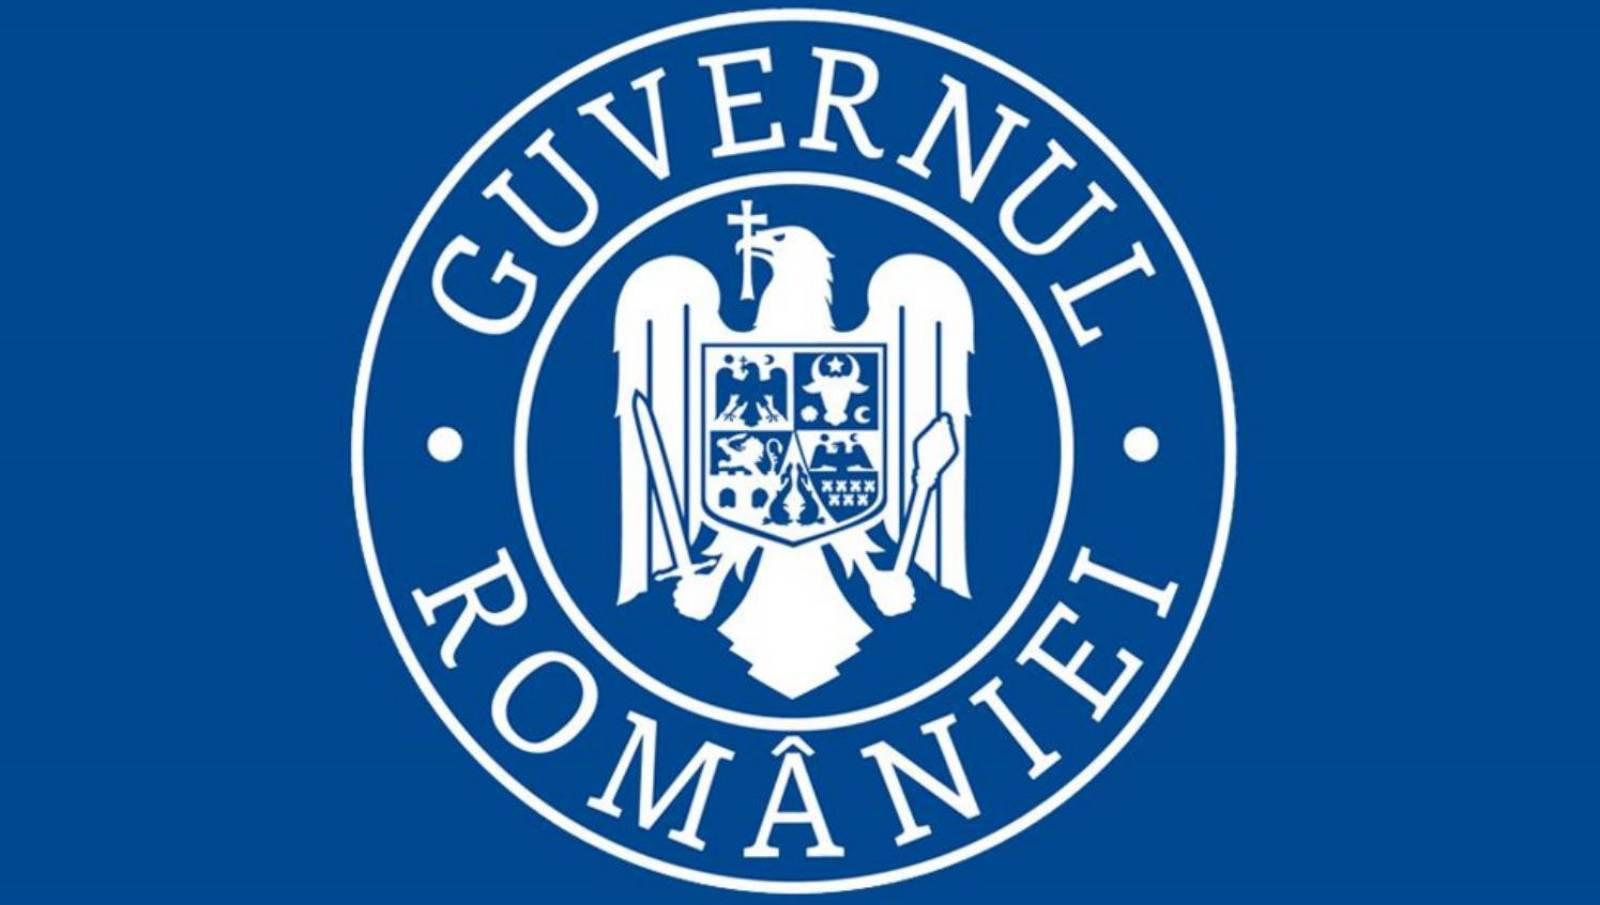 Guvernul Romaniei ALERTA cibernetica